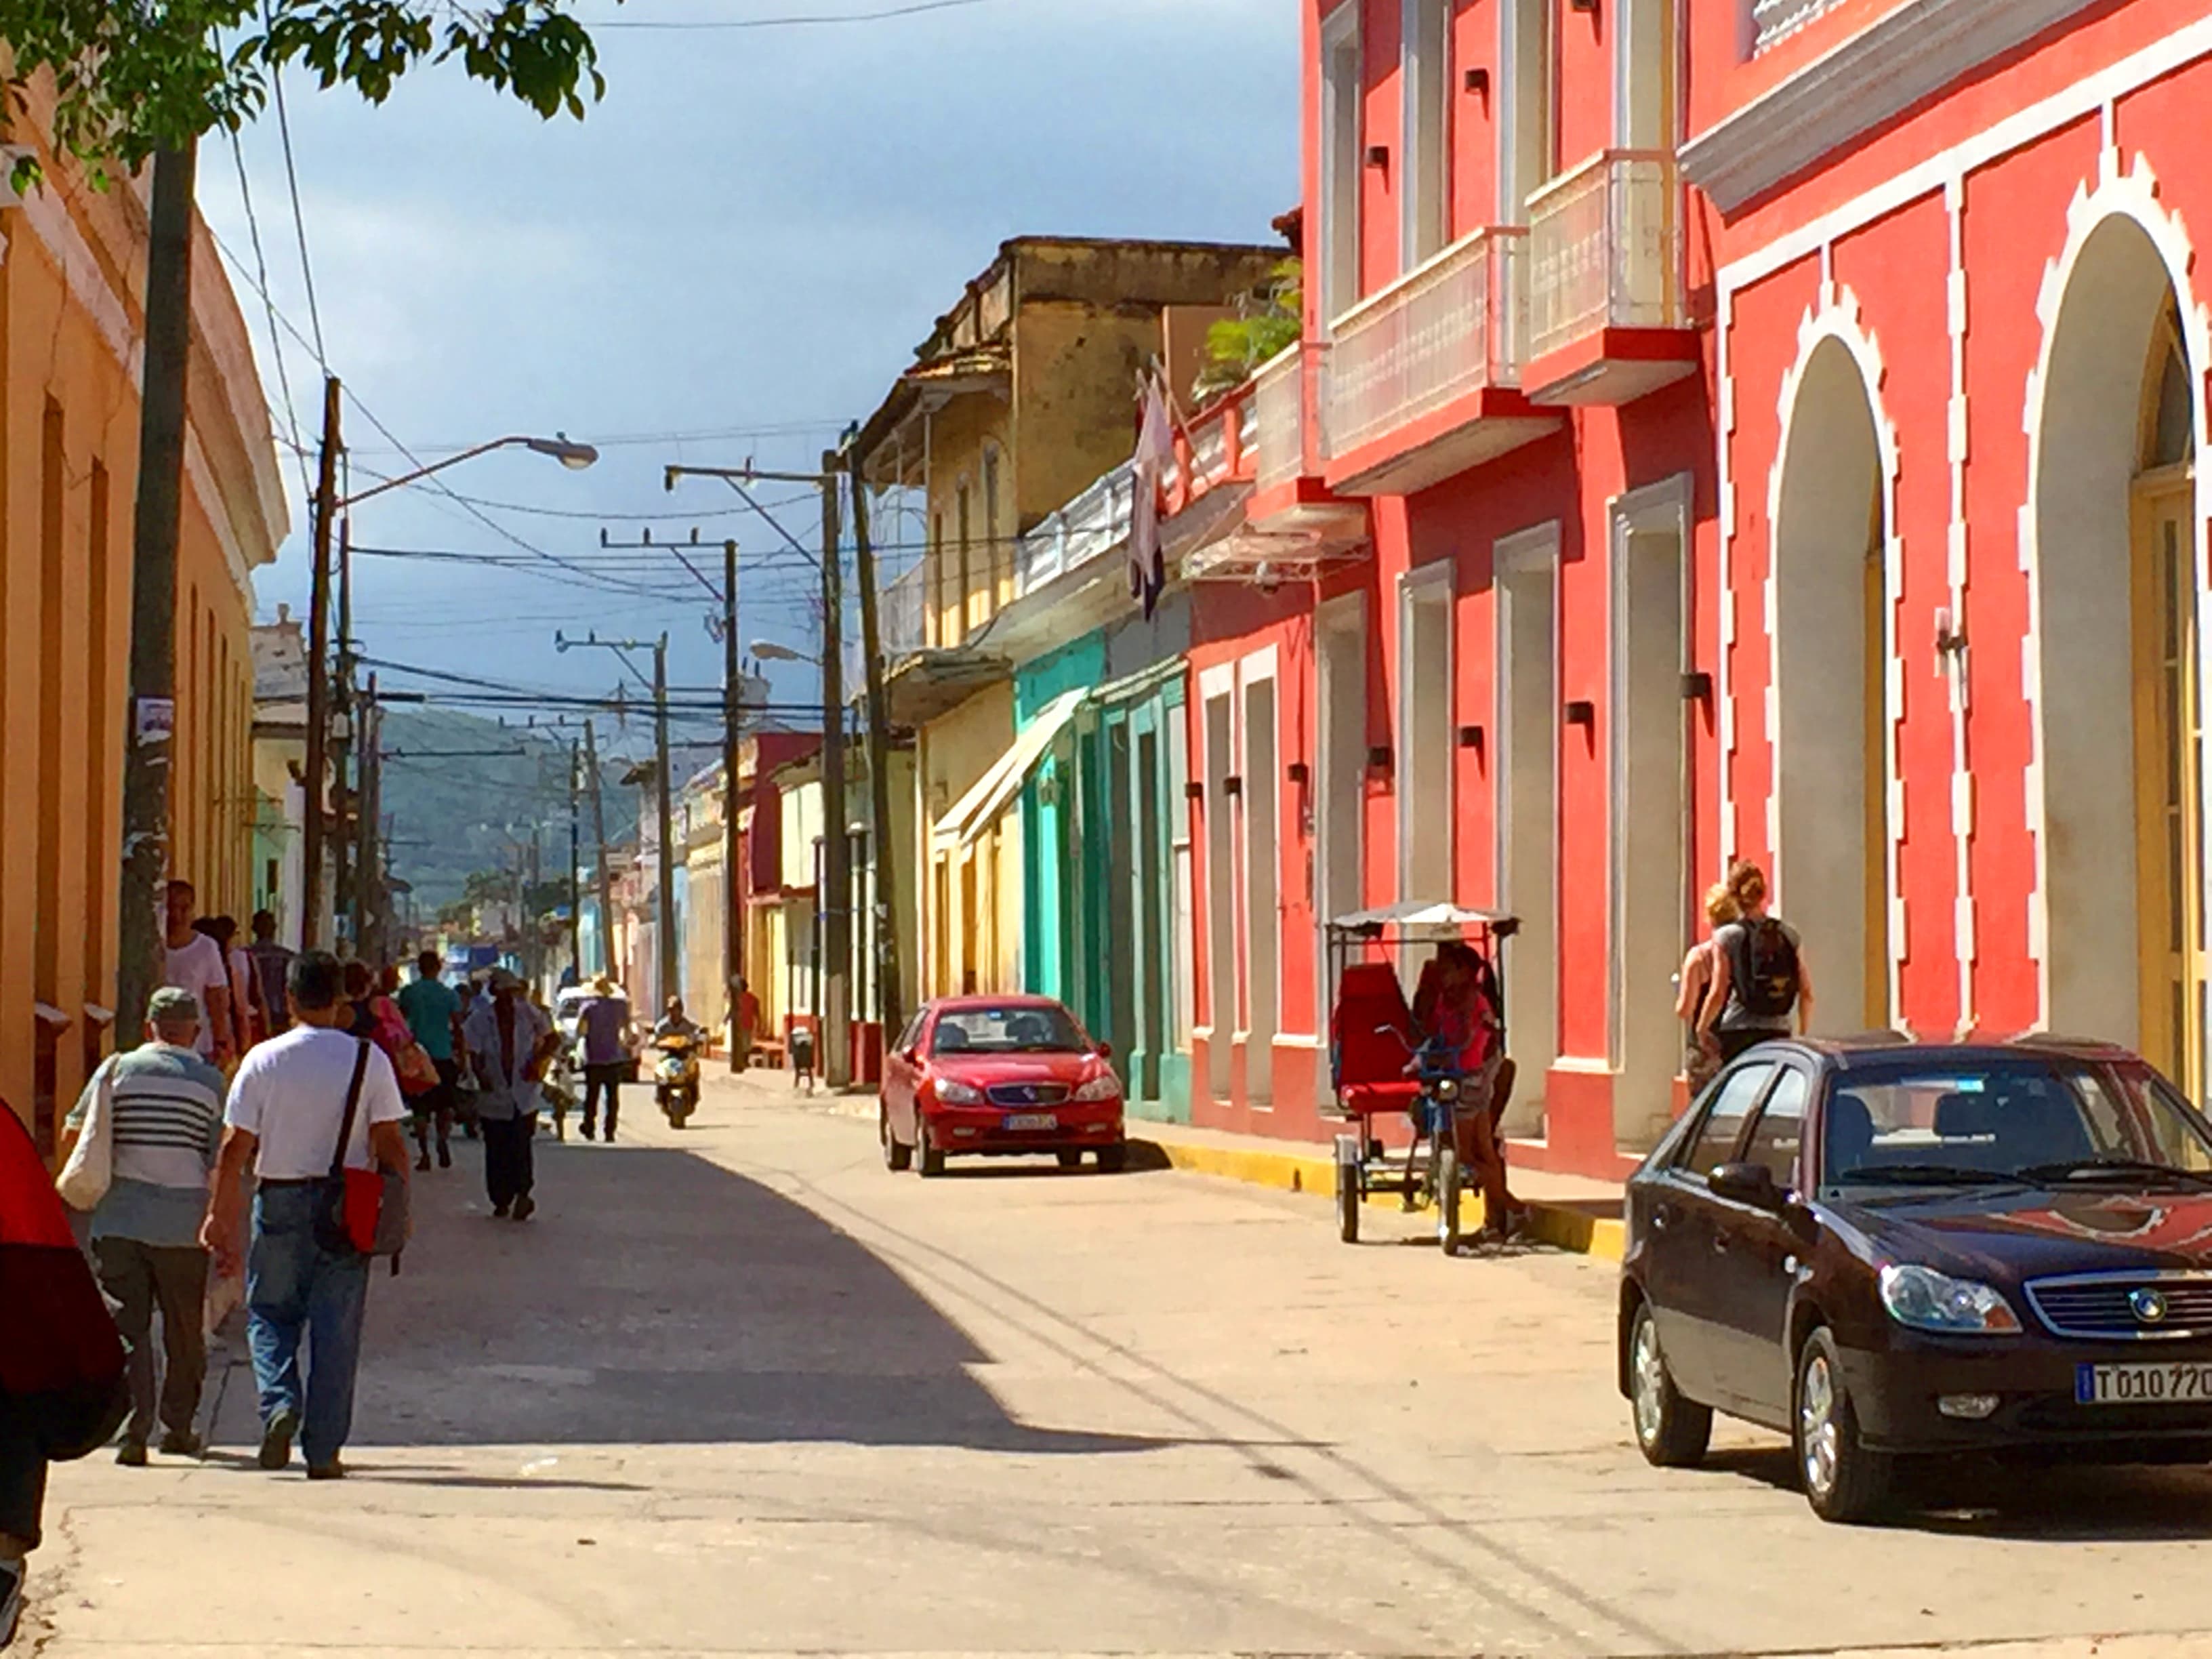 Du kan bl.a. kjøpe utflukter i Trinidad på reisen din til Cuba